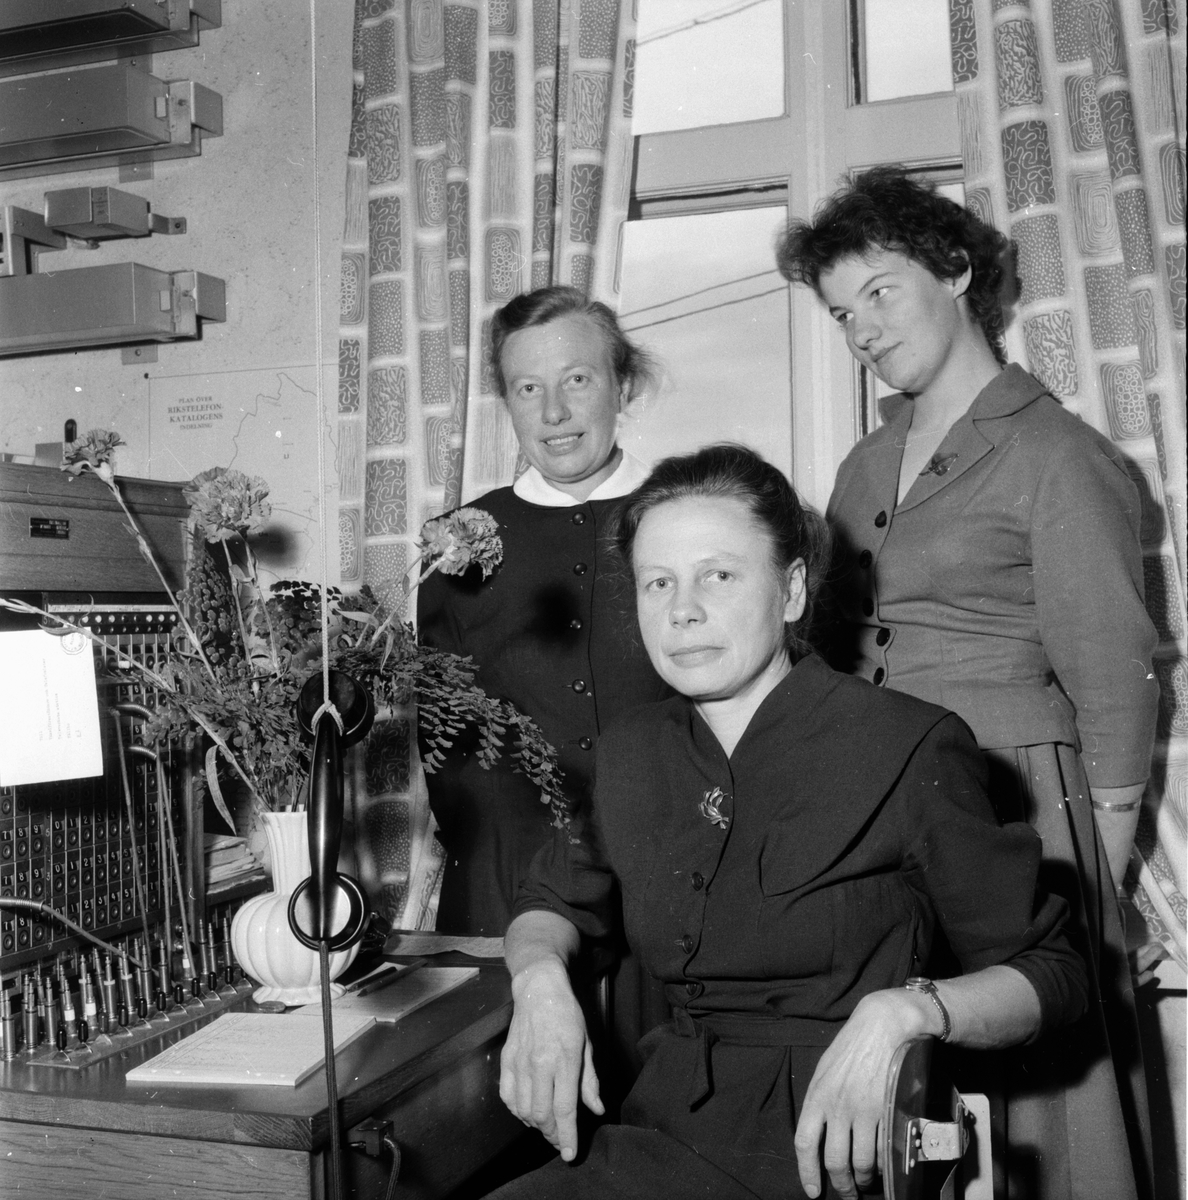 Telefonväxeln i Hällbo flyttar.
23/10 1958